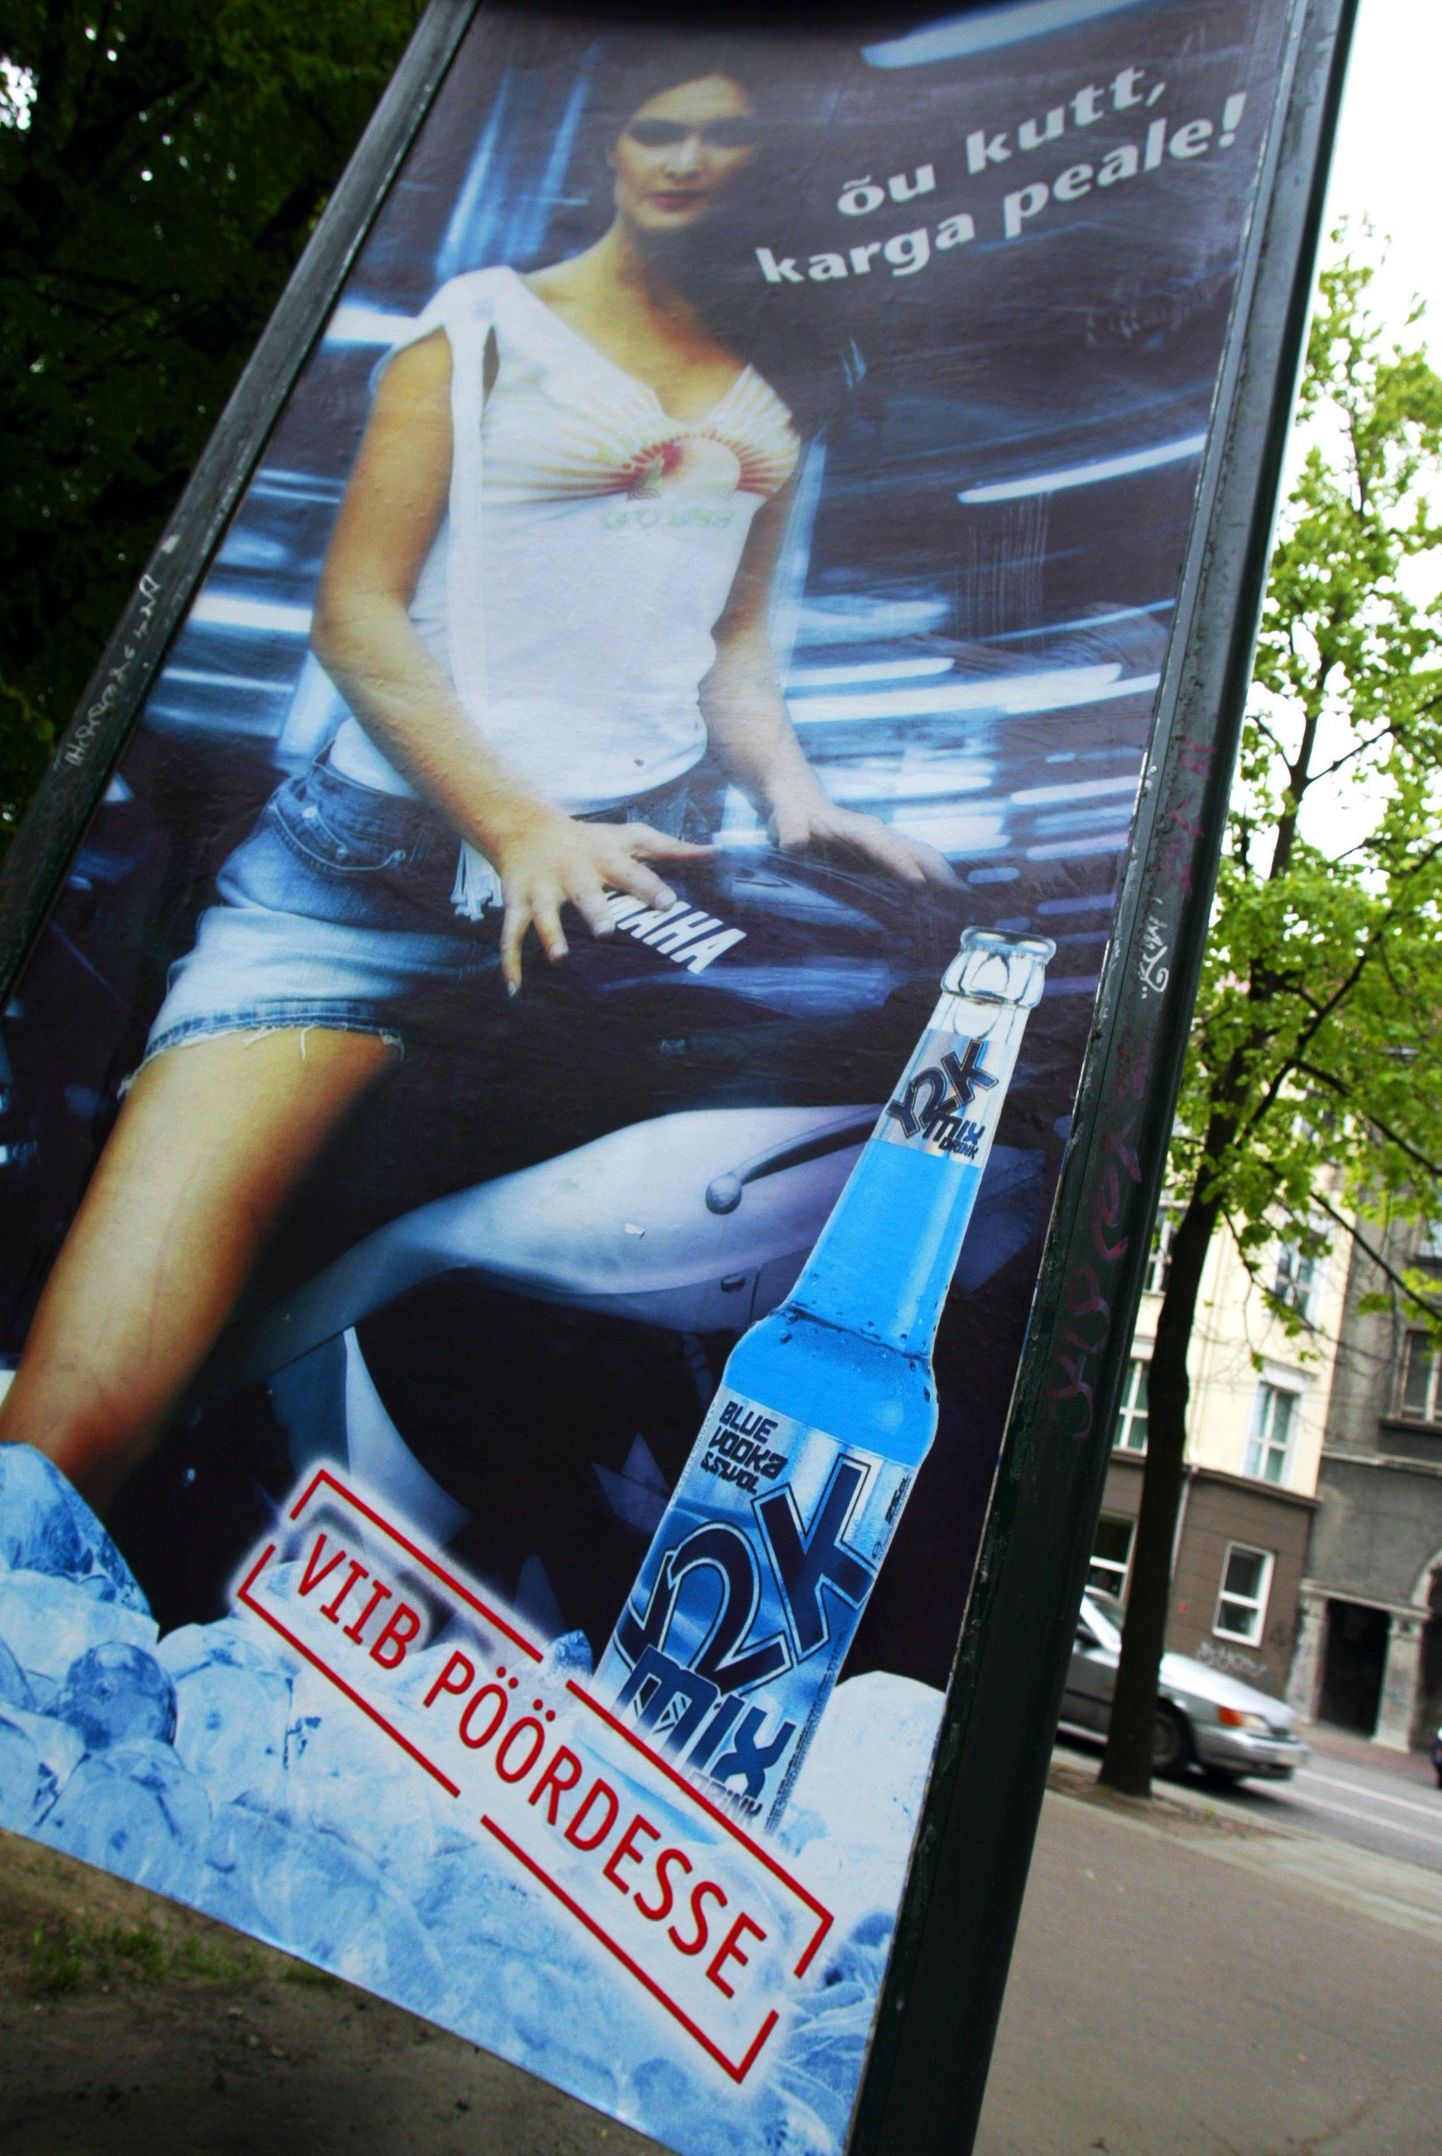 Mõned aastat tagasi Tallinna südalinna tänavaid ääristanud seksismile viitav alkoholireklaam.